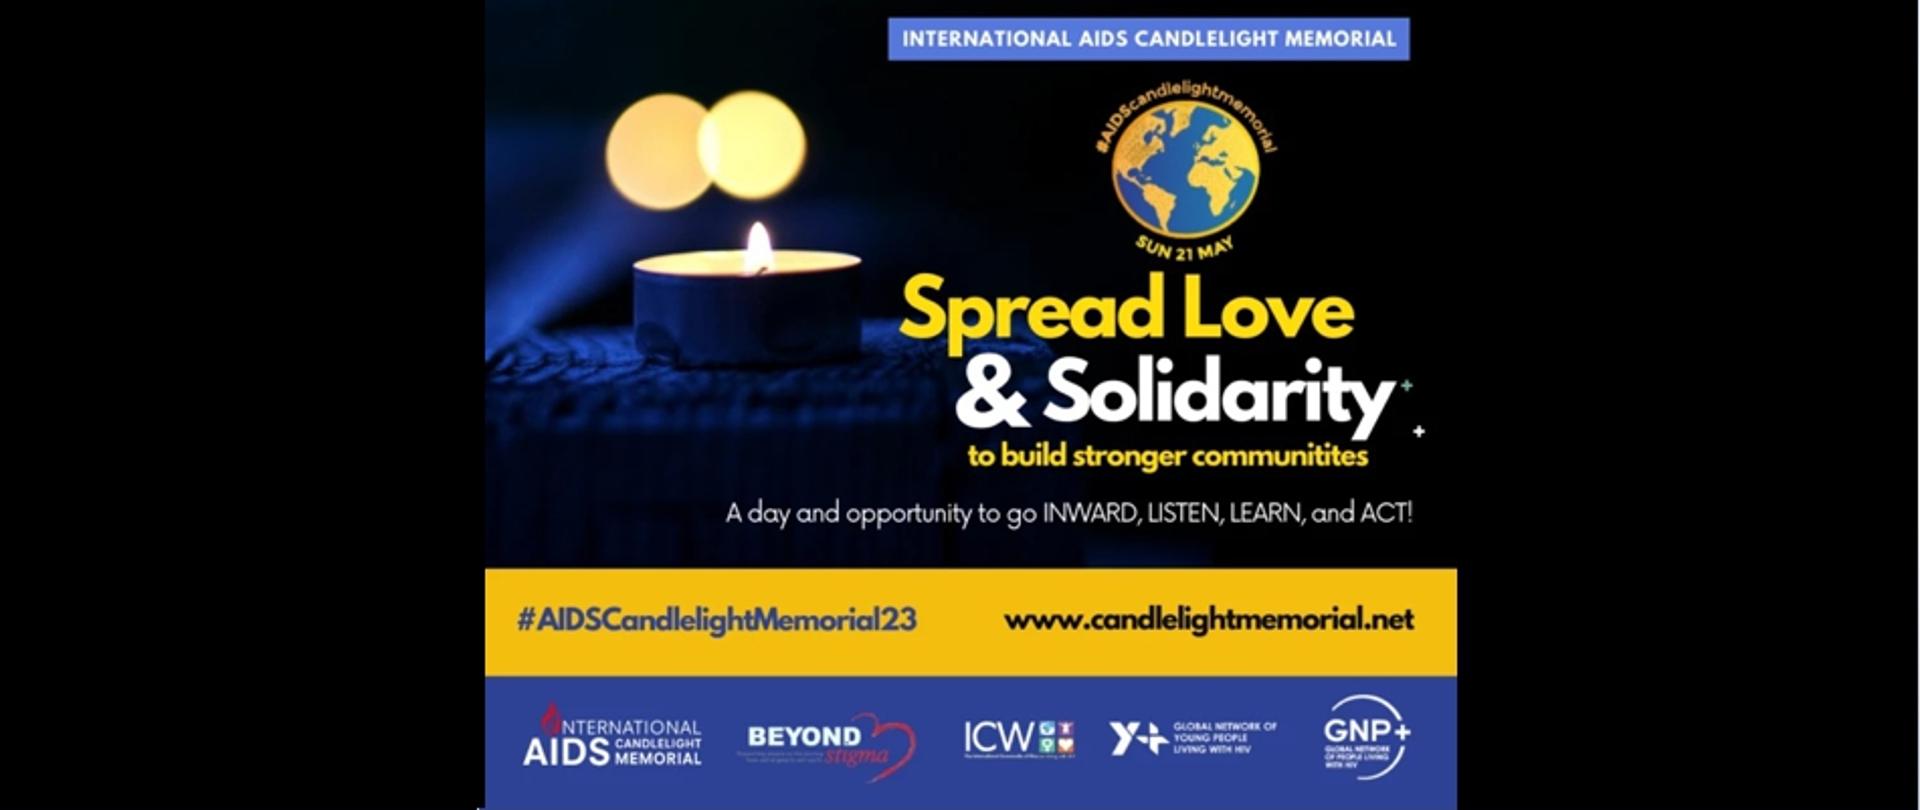 Na zdjęciu znajduje się świeczka oraz napis w języku angielskim dotyczący Międzynarodowy Dzień Pamięci o Zmarłych na AIDS 